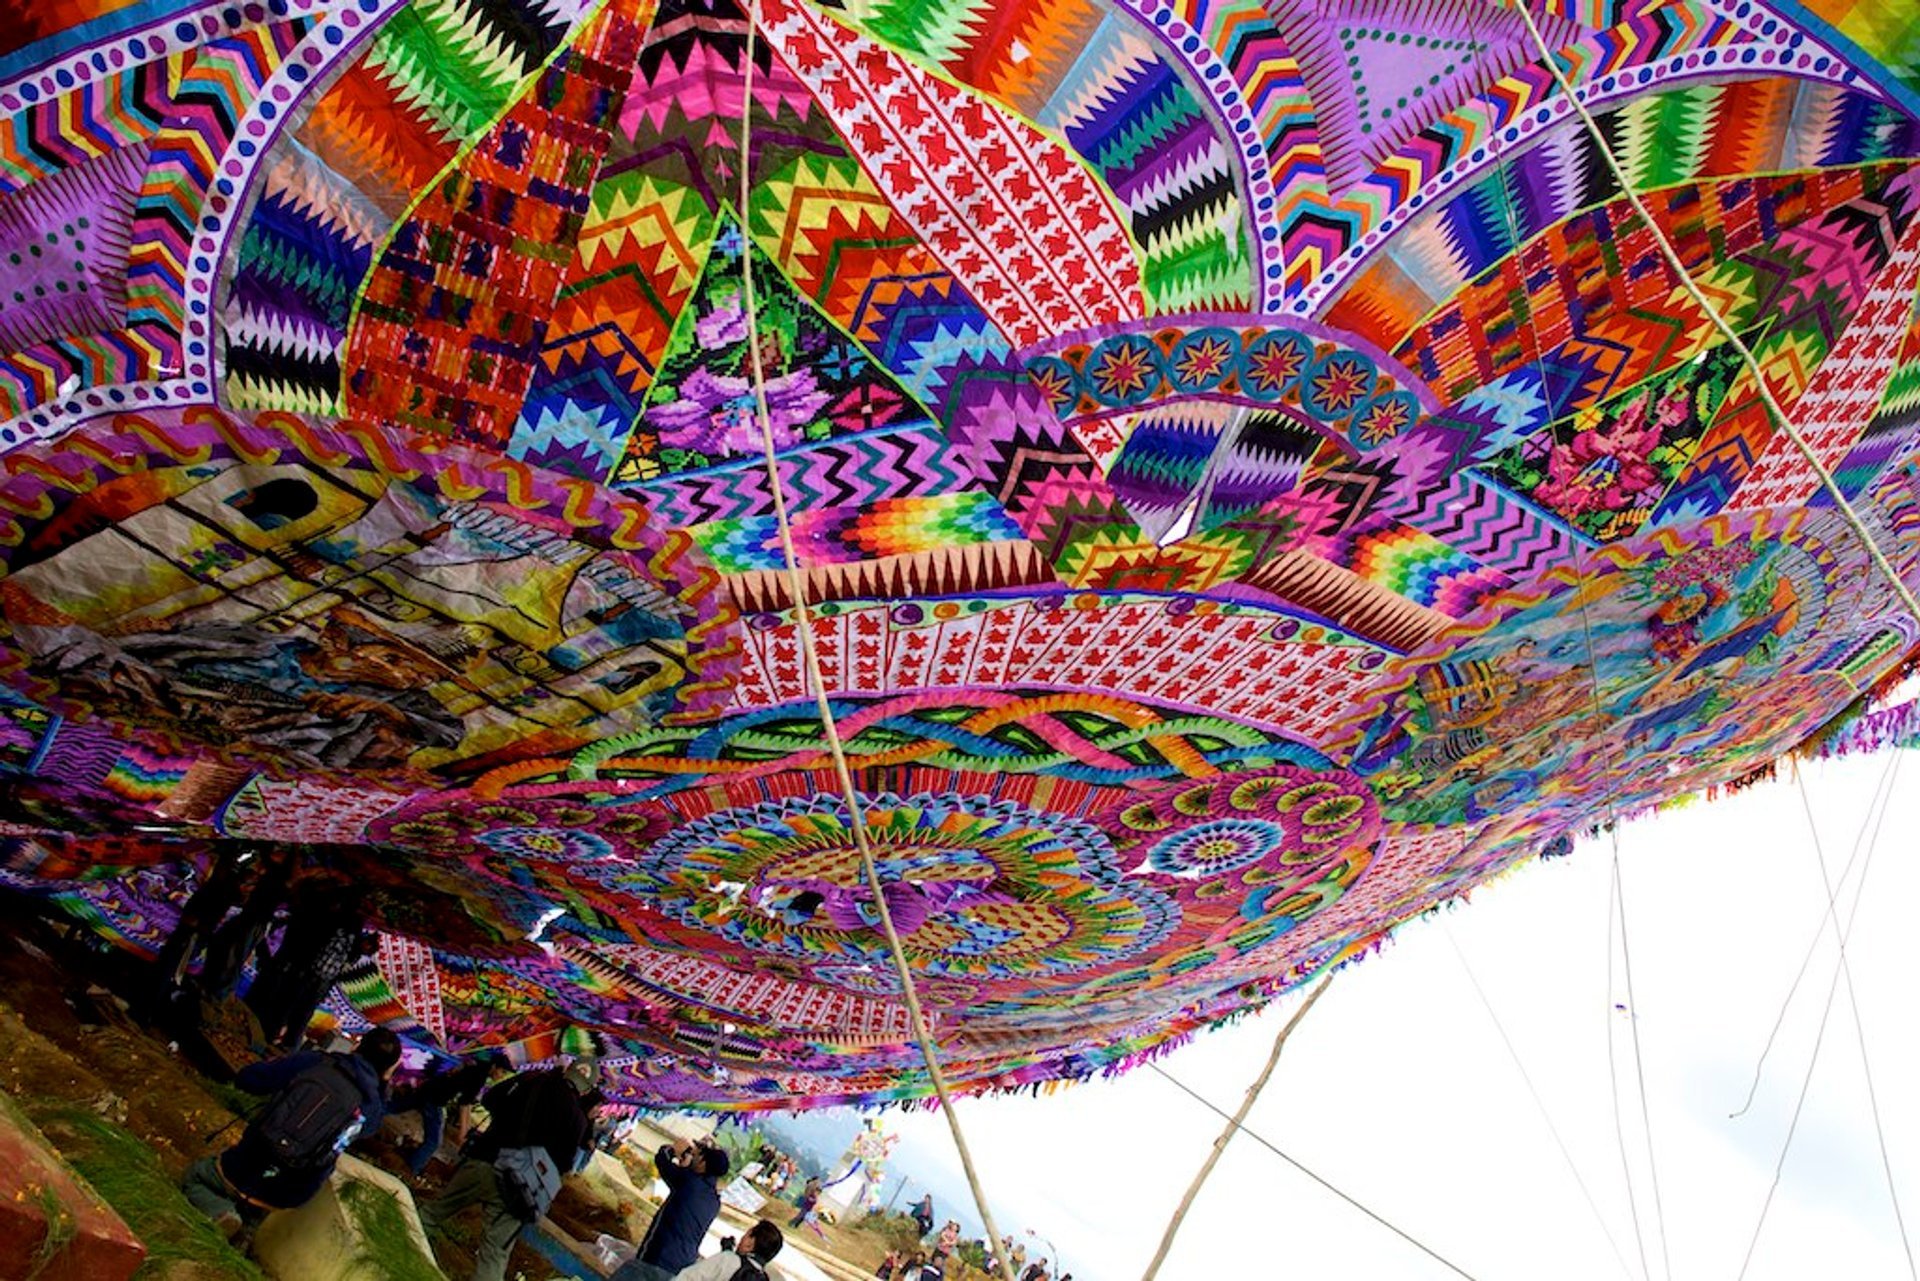 Festival de Barriletes Gigantes or Day of the Dead Kite Festival